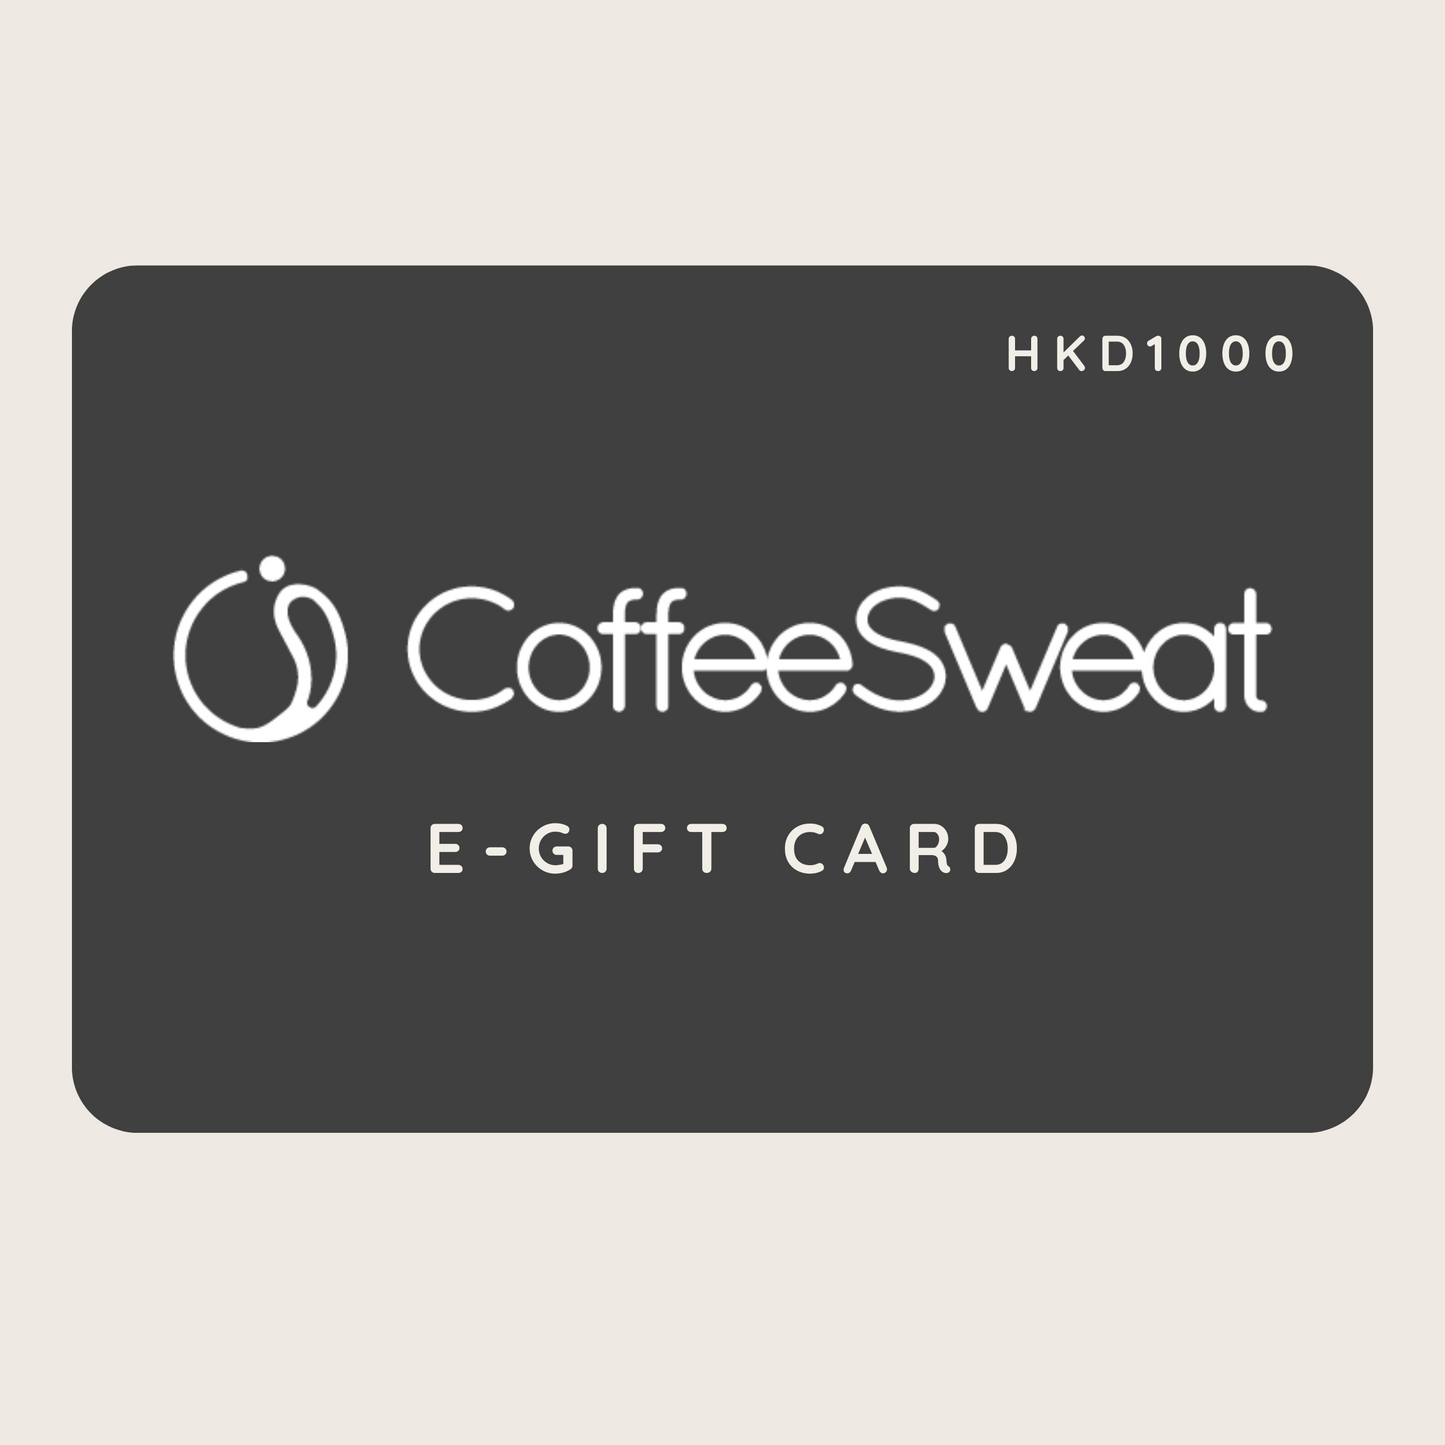 CoffeeSweat 電子禮品卡